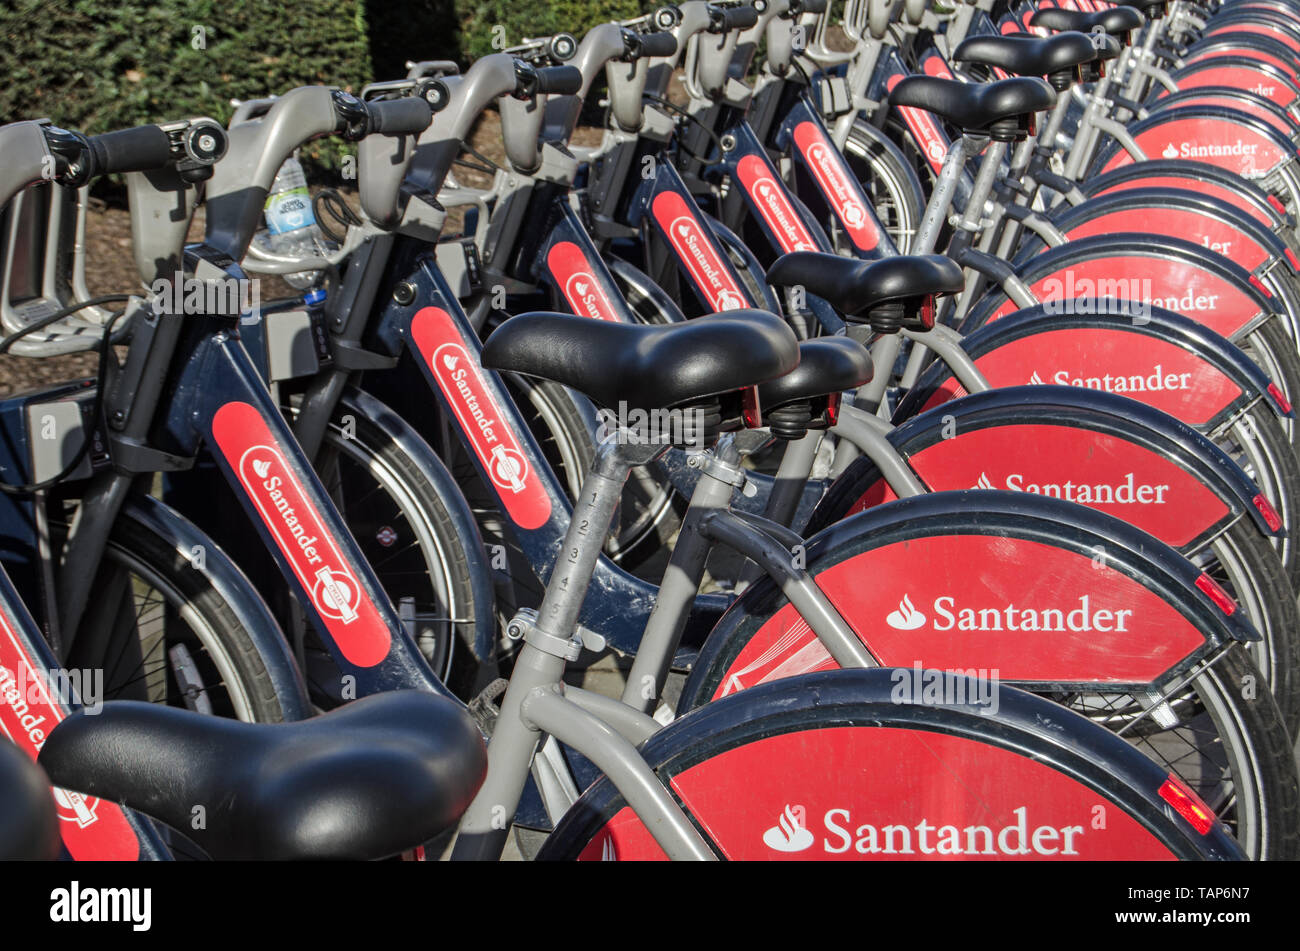 LONDON, Regno Unito - 28 gennaio 2016: un cesto pieno di trasporto pubblico biciclette sponsorizzato dalla società di banca Santander. Foto Stock